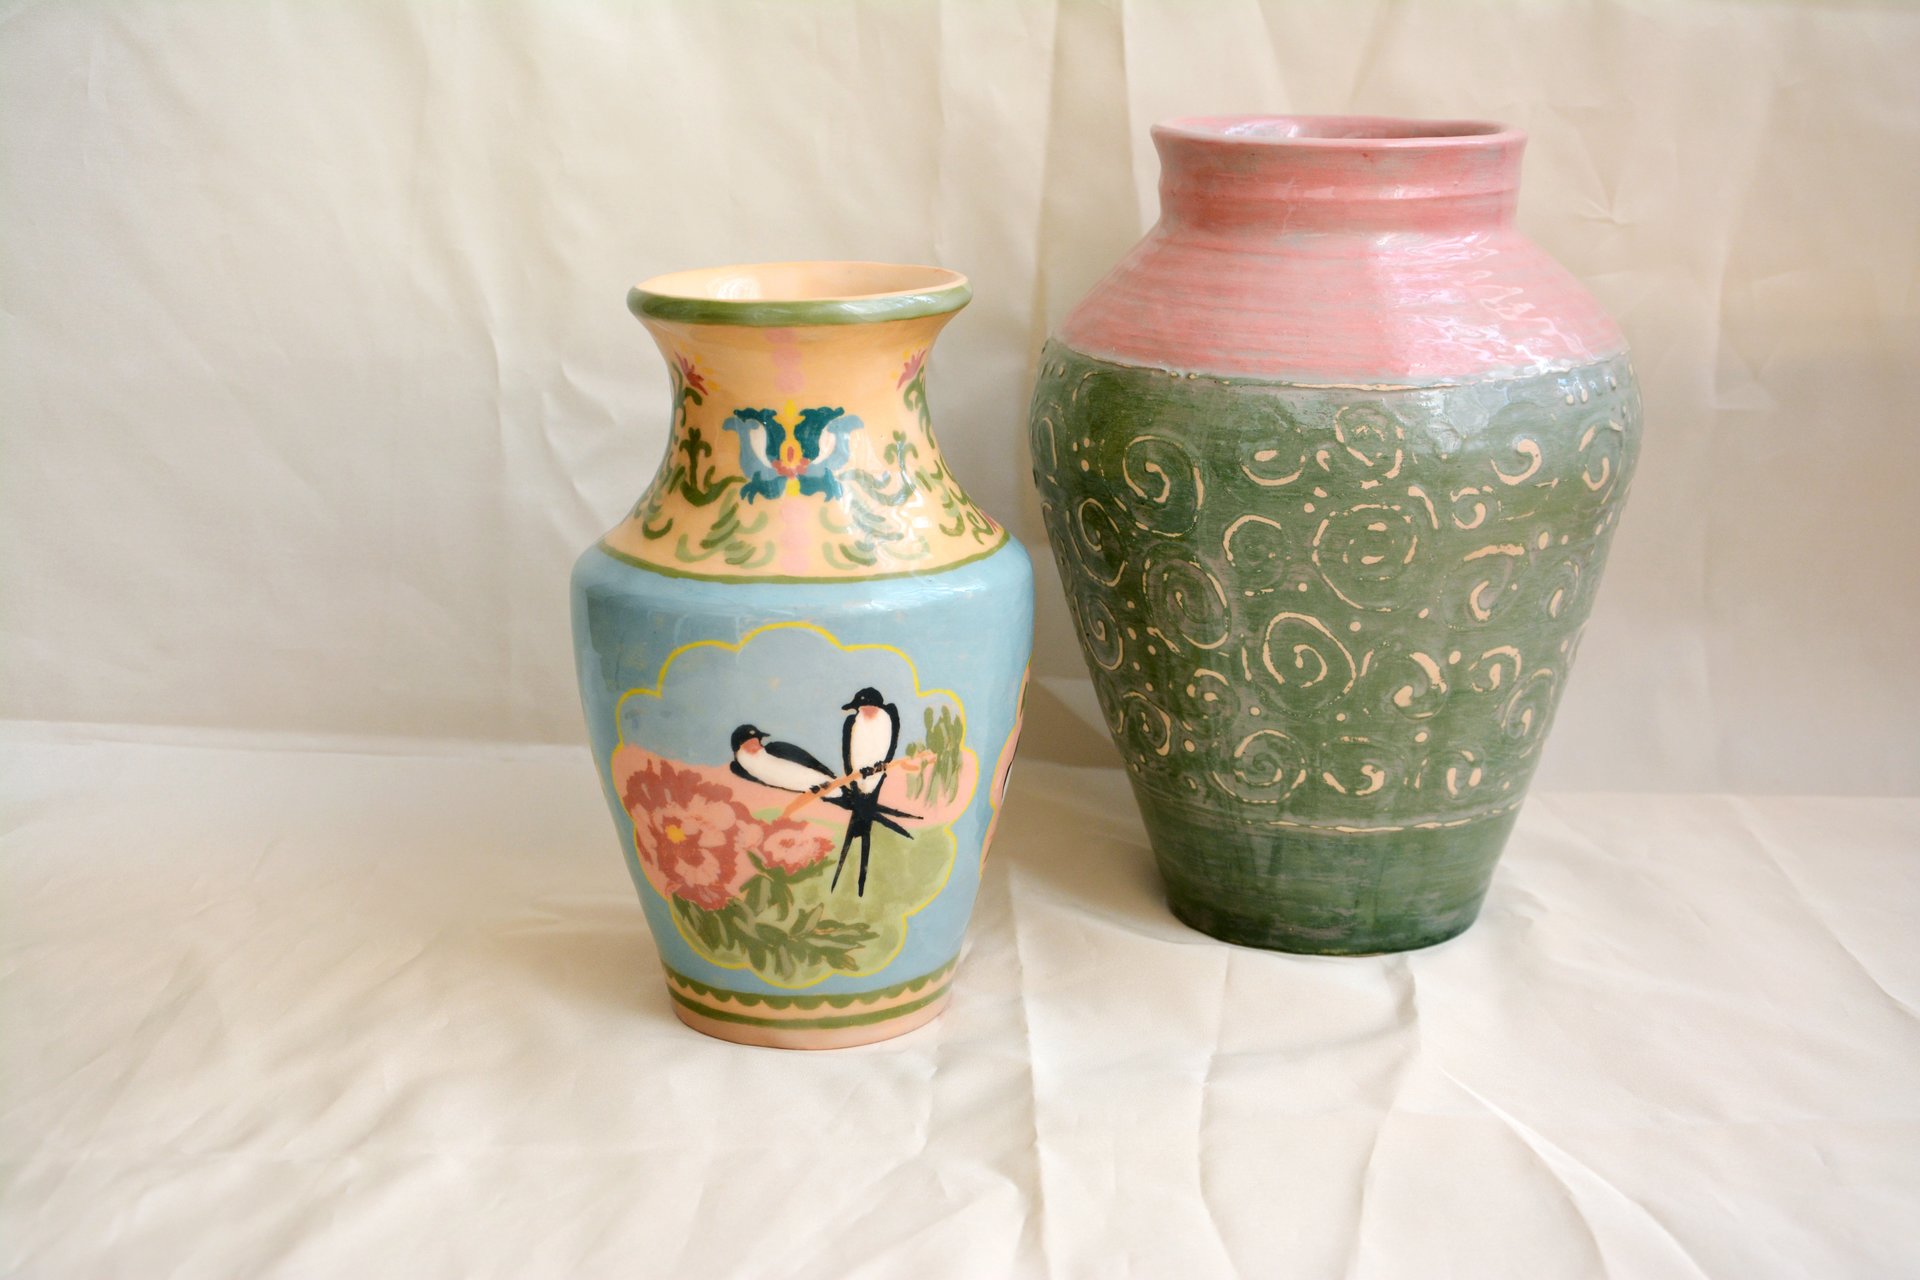 Classic ceramic vases